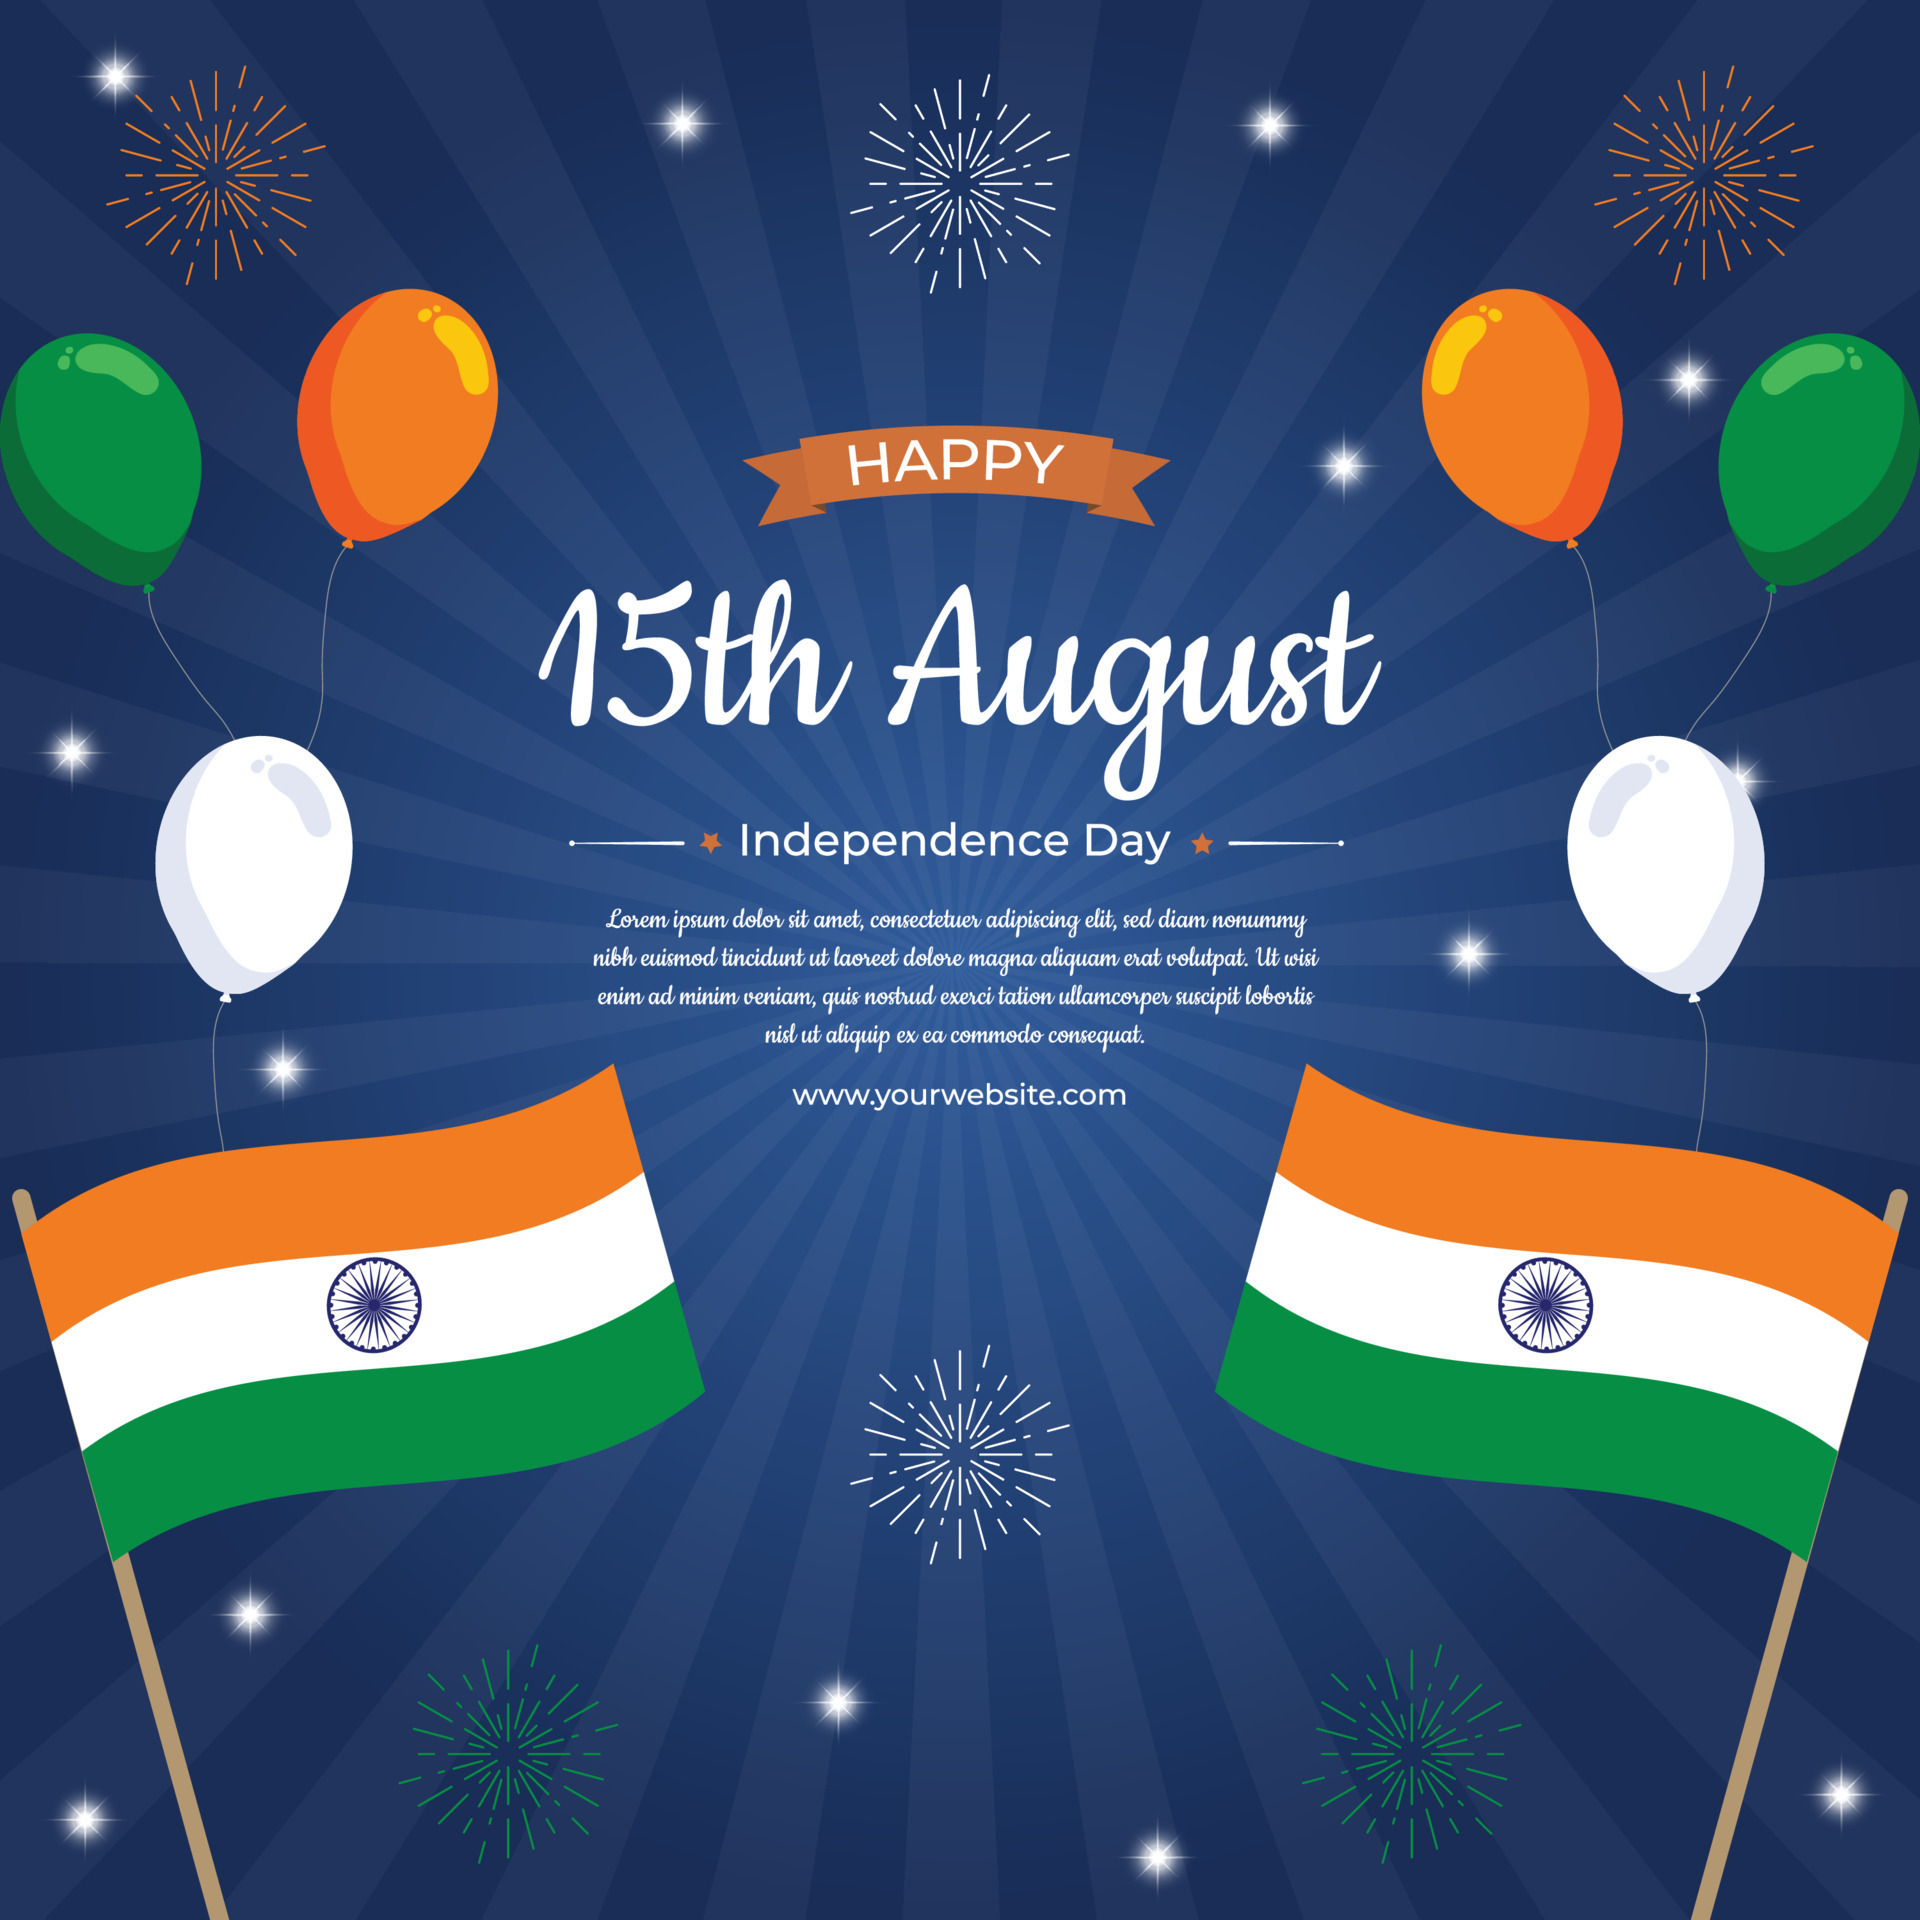 Lễ kỷ niệm độc lập Ấn Độ: Lễ kỷ niệm độc lập là ngày trọng đại nhất trong lịch sử Ấn Độ. Hãy xem hình ảnh liên quan để cảm nhận vẻ đẹp và tưng bừng của lễ hội này, với hàng ngàn người dân ăn mừng và hò reo, đồng hành cùng nhau để tưởng nhớ quá khứ và khẳng định tương lai tươi sáng. 